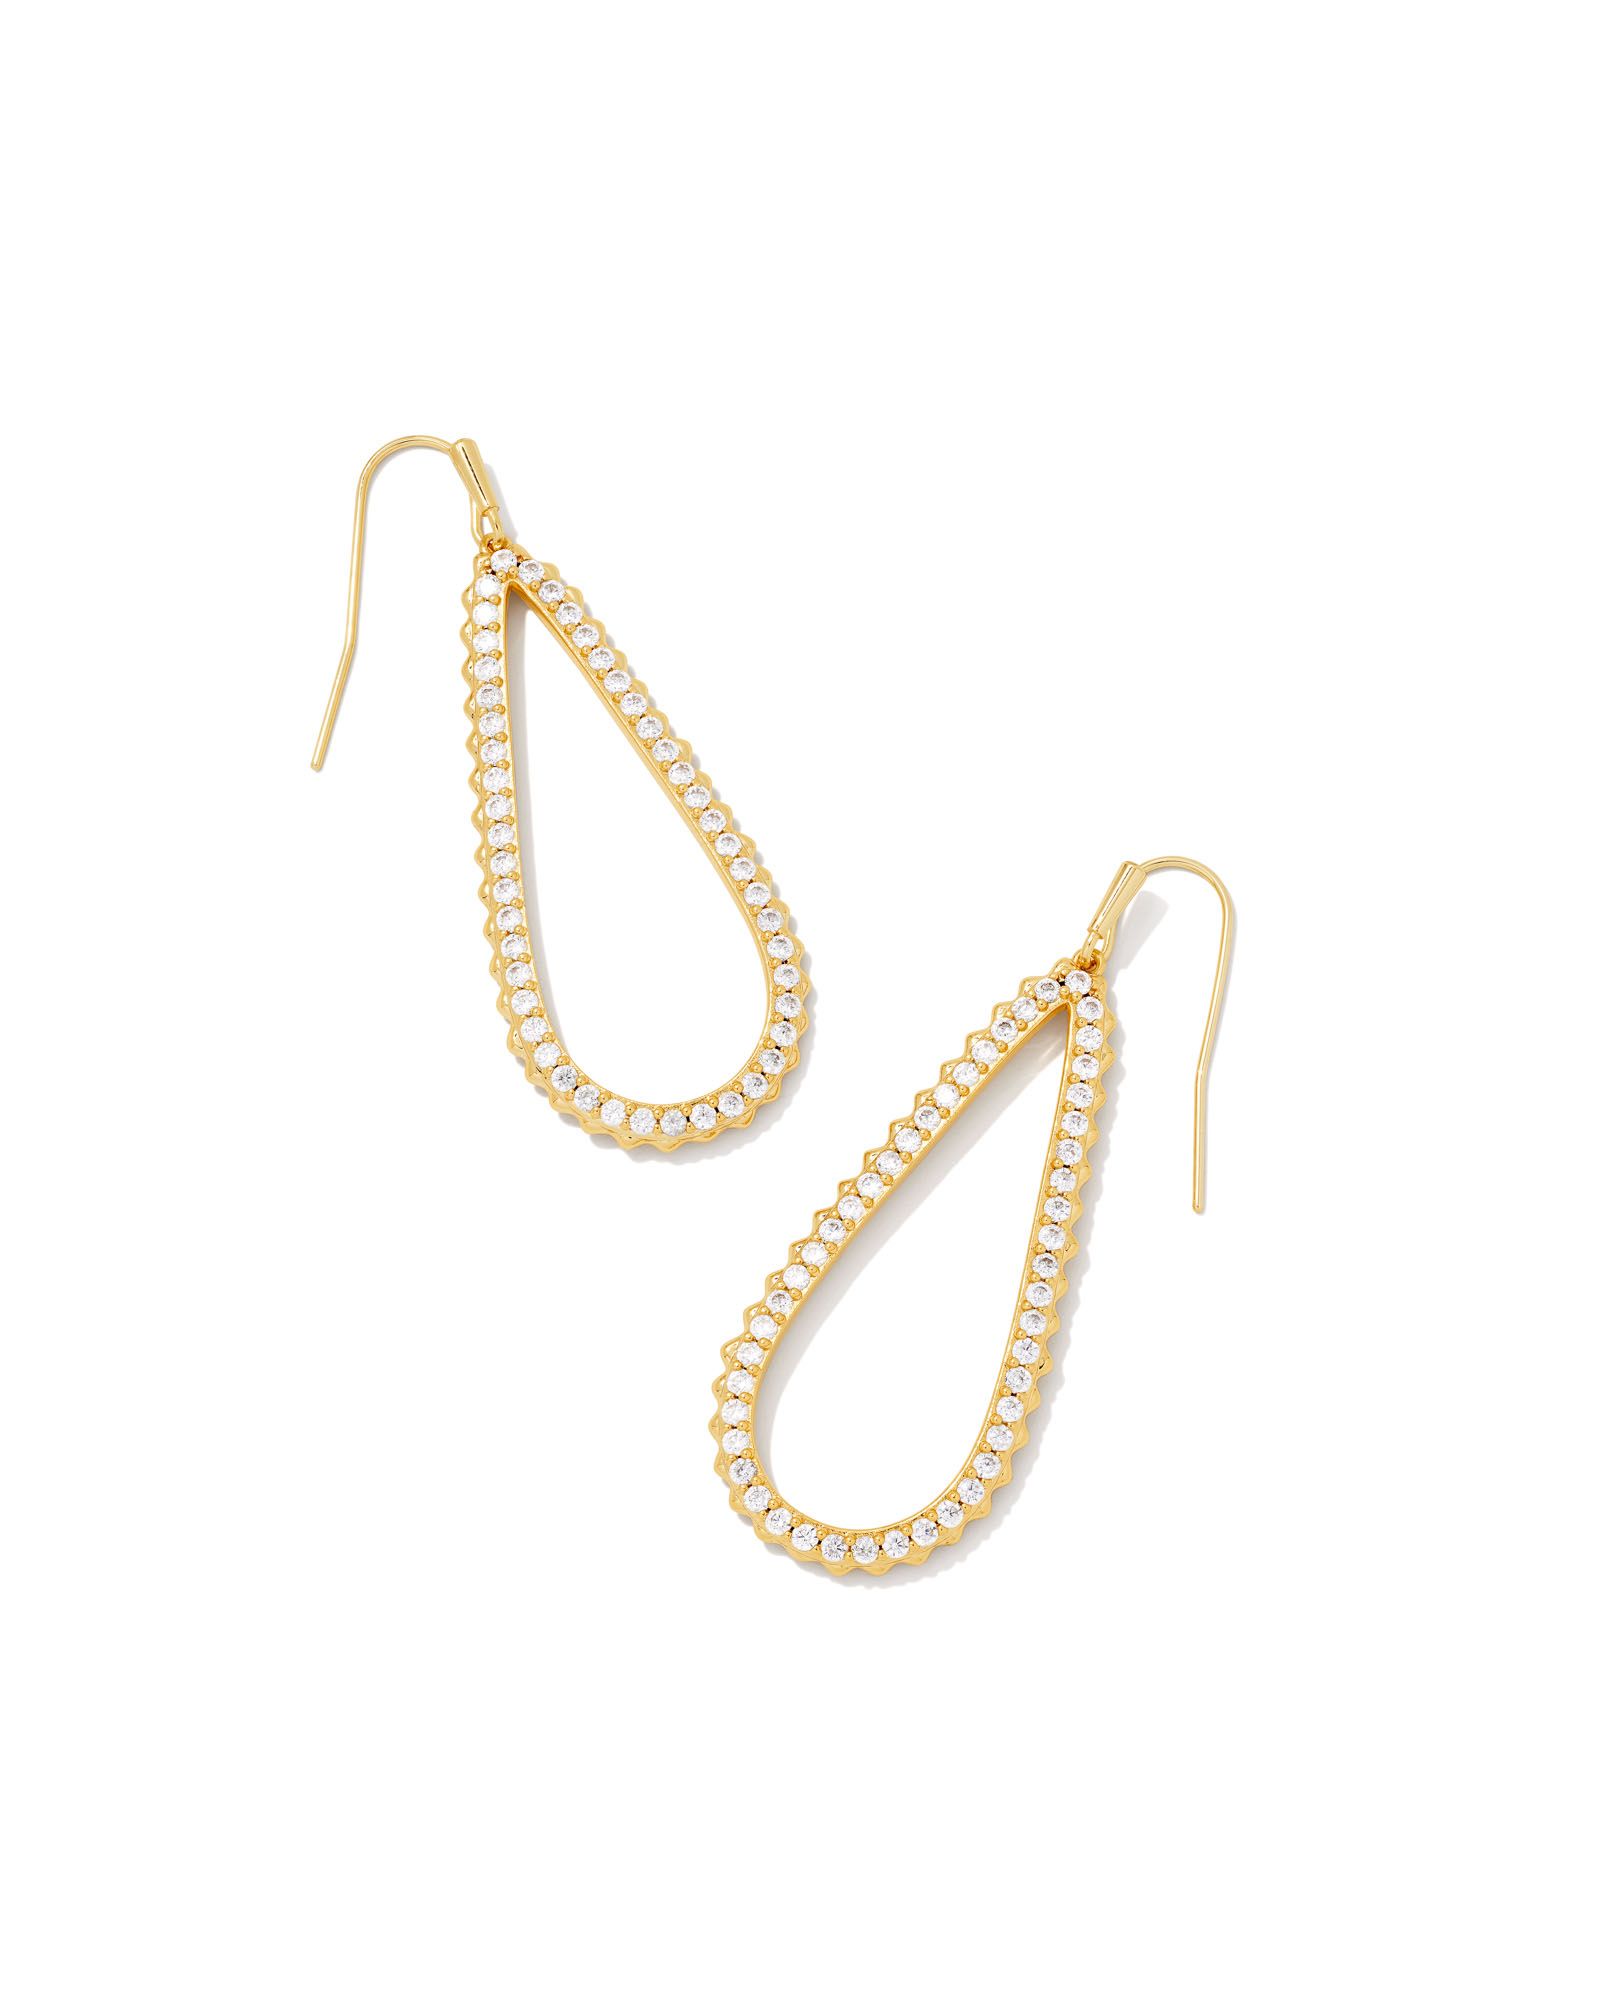 Payton Gold Open Frame Earrings in White Crystal | Kendra Scott